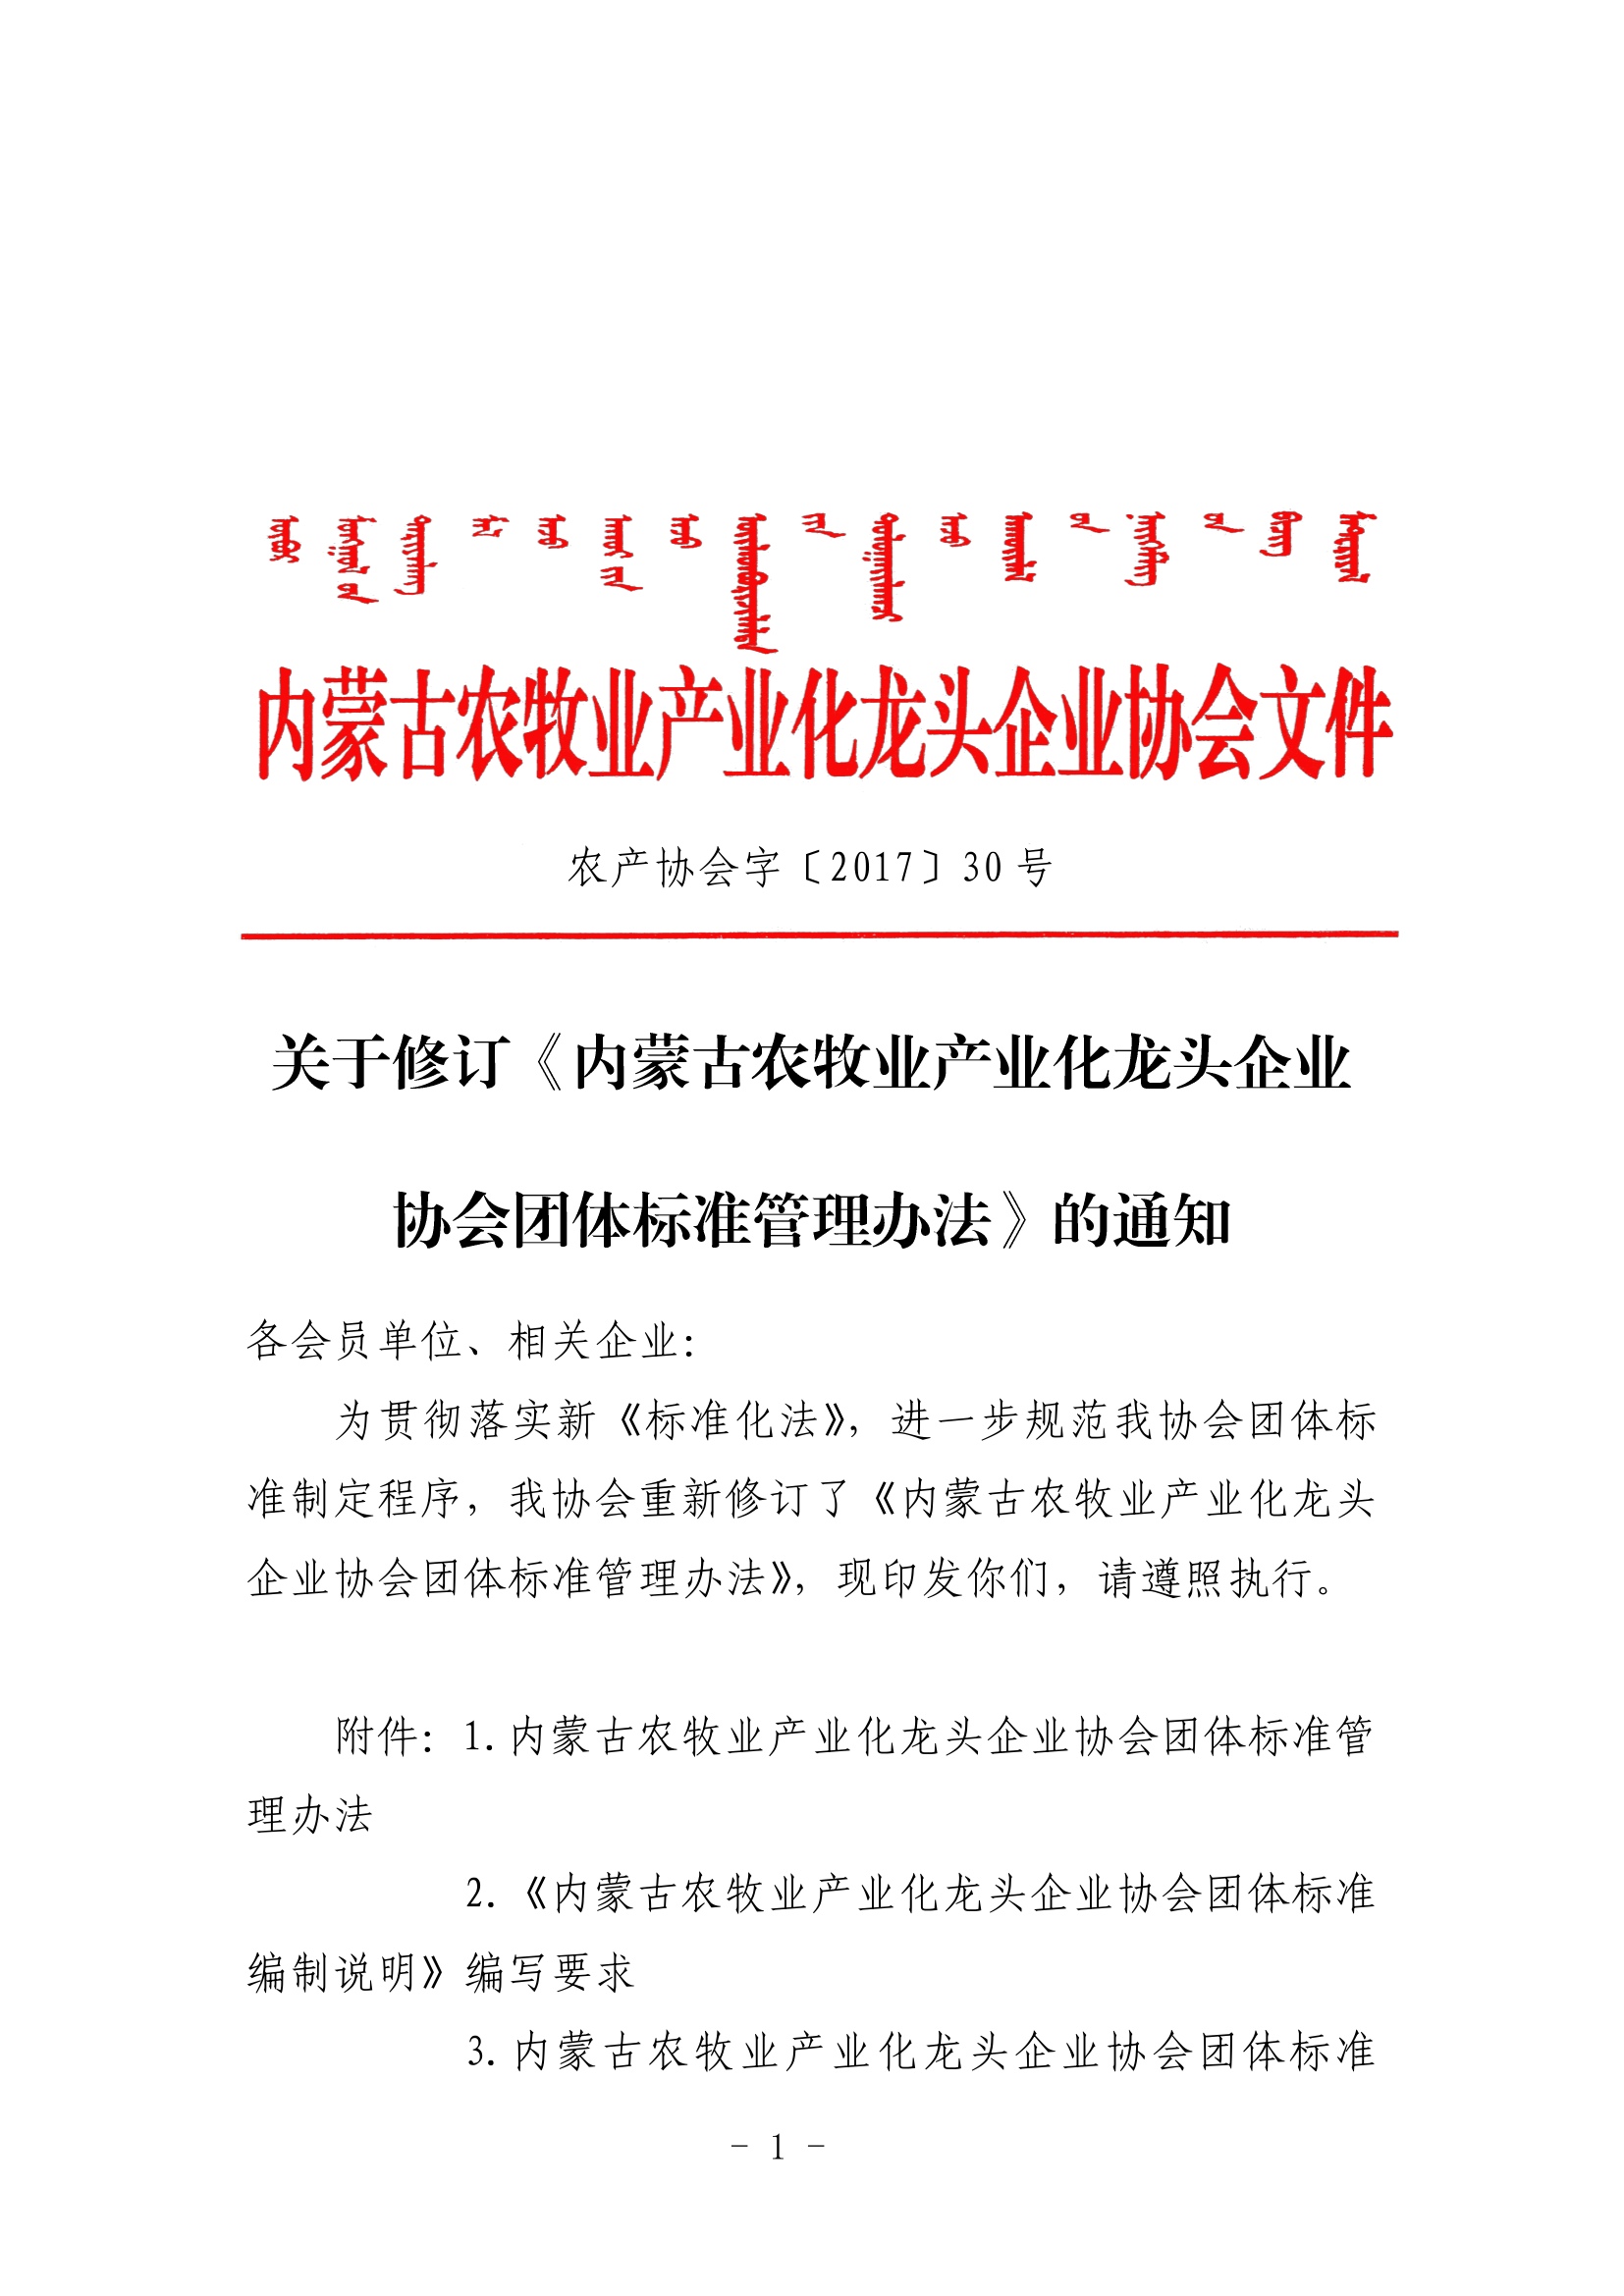 关于修订《内蒙古农牧业产业化买球-买球(中国)协会团体标准管理办法》的通知